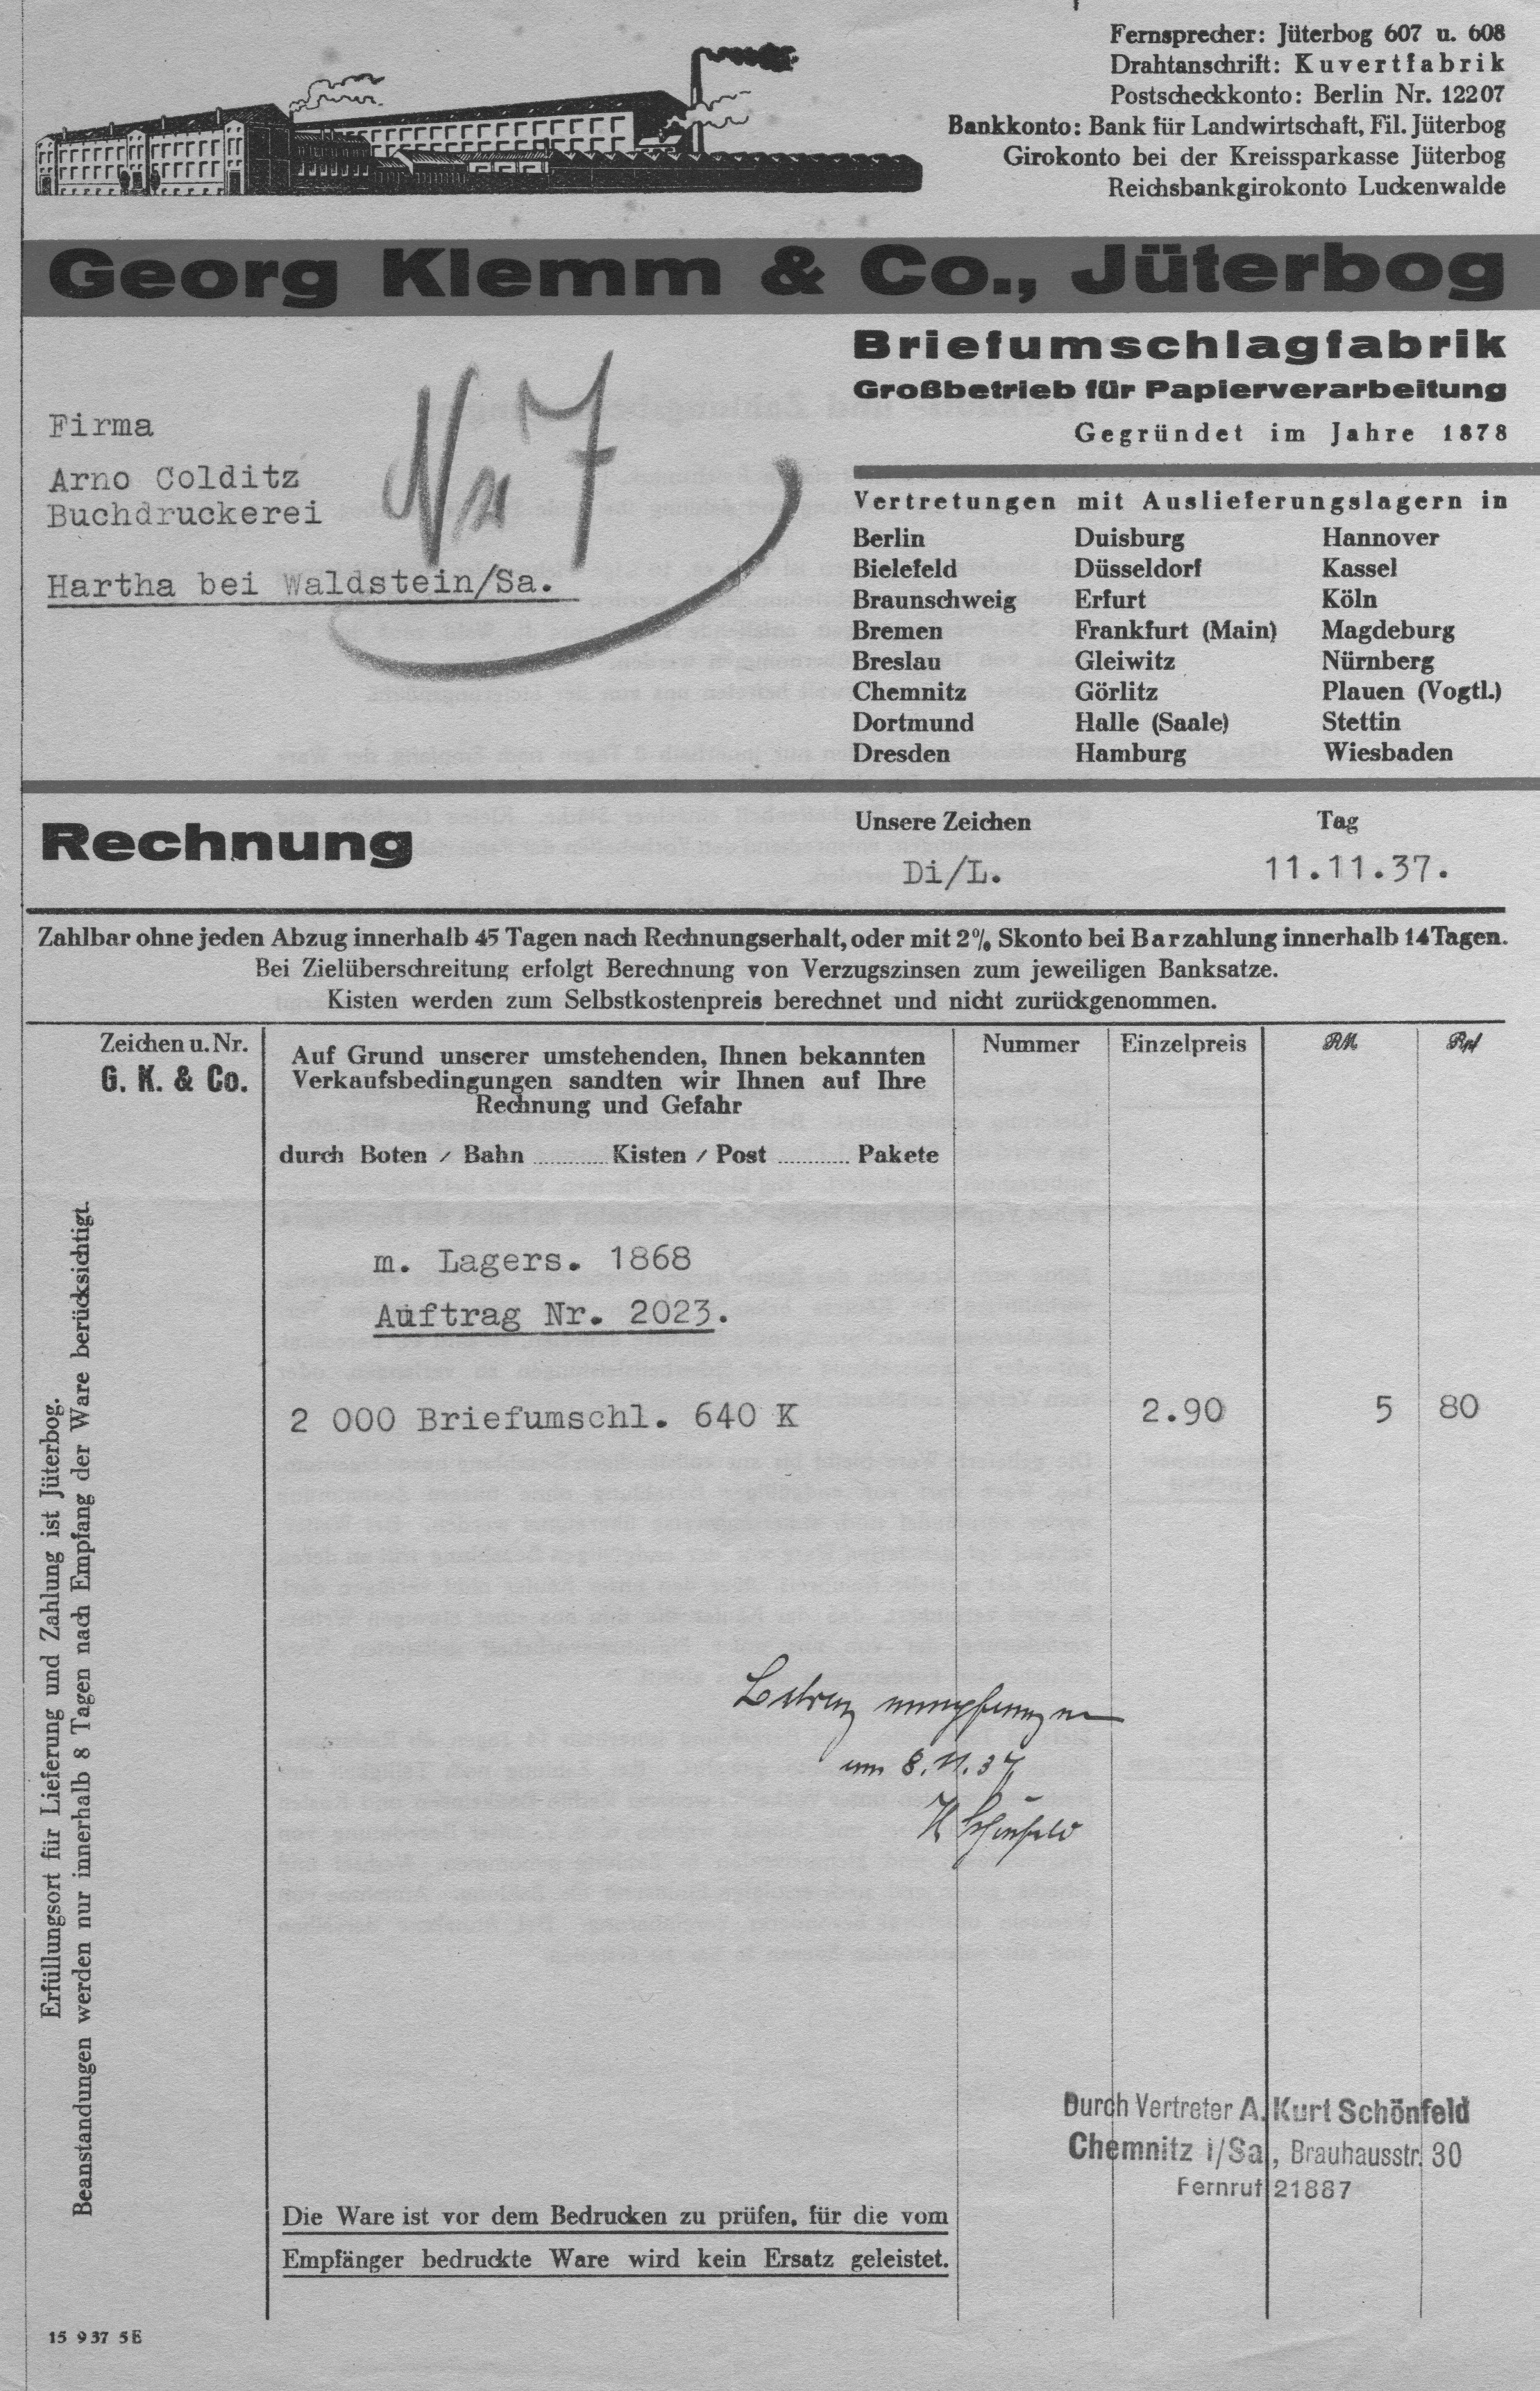 Vergleichs-Rechnung vom 11.11.1937, 2000 Briefumschläge zum EK von 5,80 RM, ein Briefumschlag 0,29 Pf., Privatbesitz